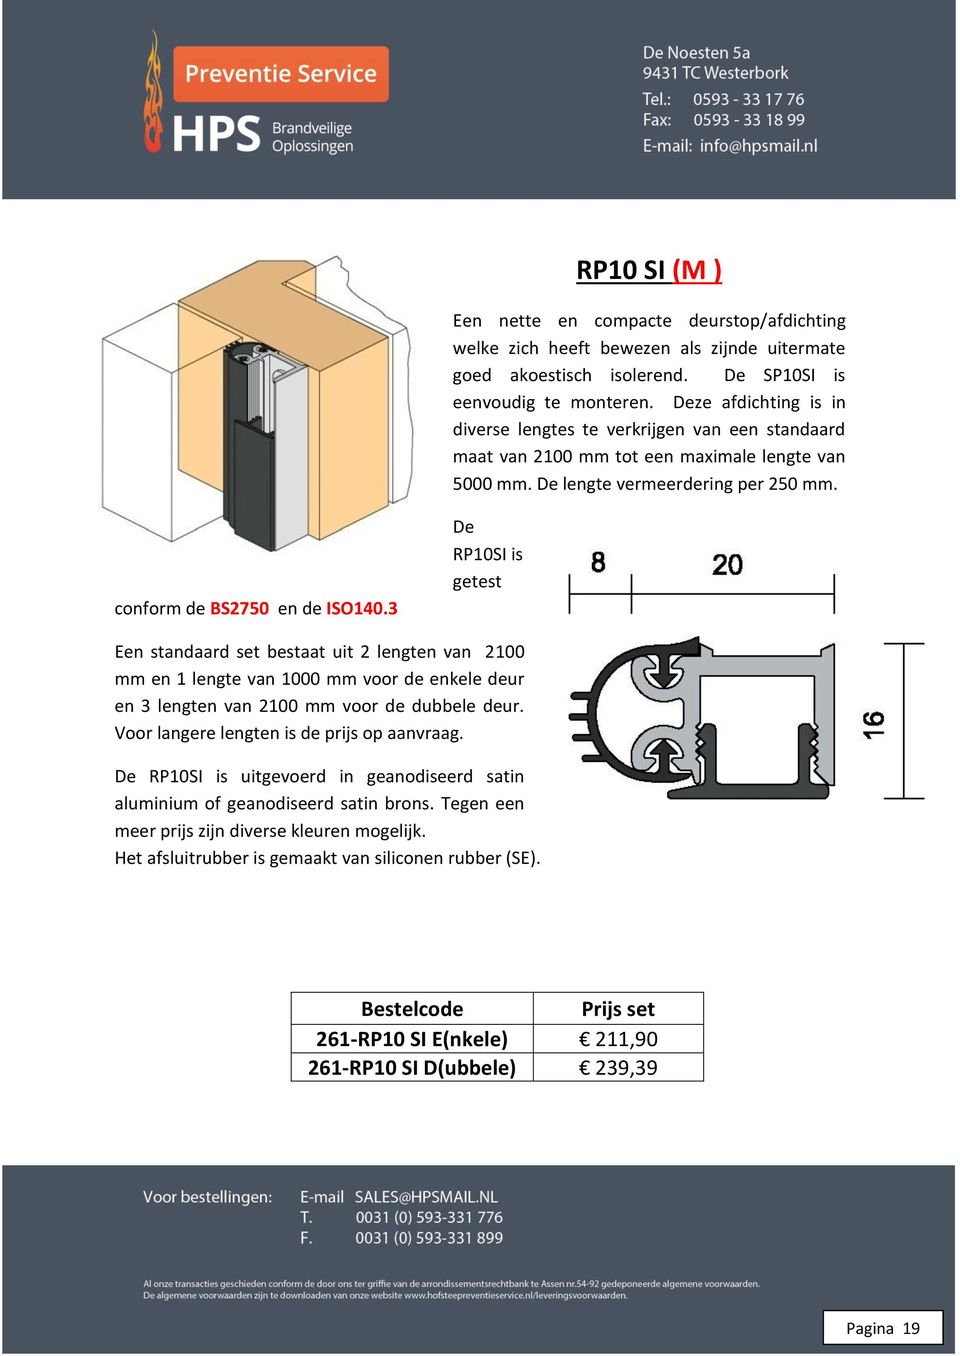 3 De RP10SI is getest Een standaard set bestaat uit 2 lengten van 2100 mm en 1 lengte van 1000 mm voor de enkele deur en 3 lengten van 2100 mm voor de dubbele deur.